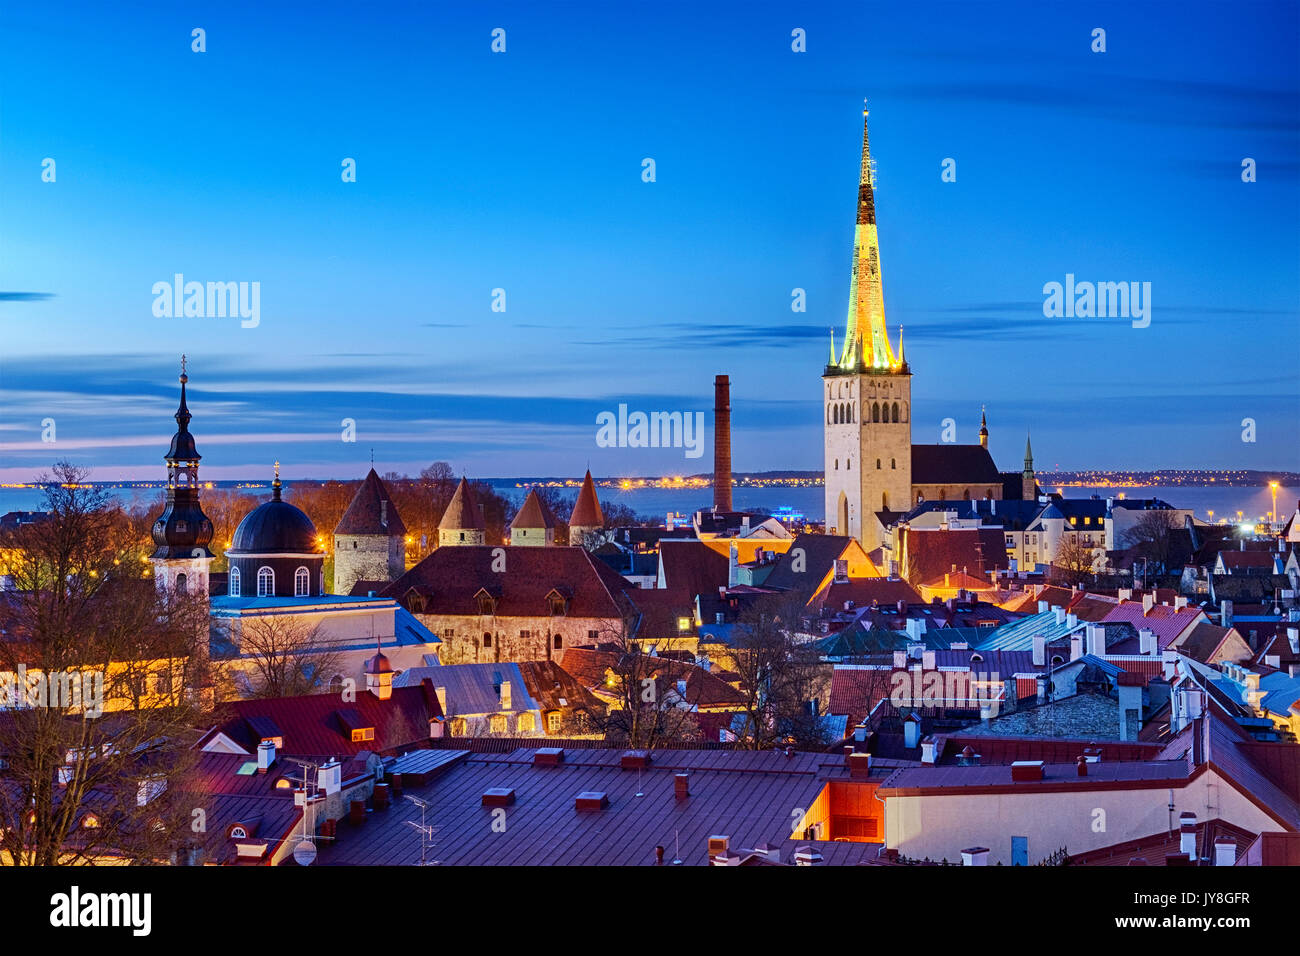 Vue panoramique de la vieille ville de Tallinn à partir de la plate-forme d'observation Kohtuotsa, Tallinn, Estonie Banque D'Images